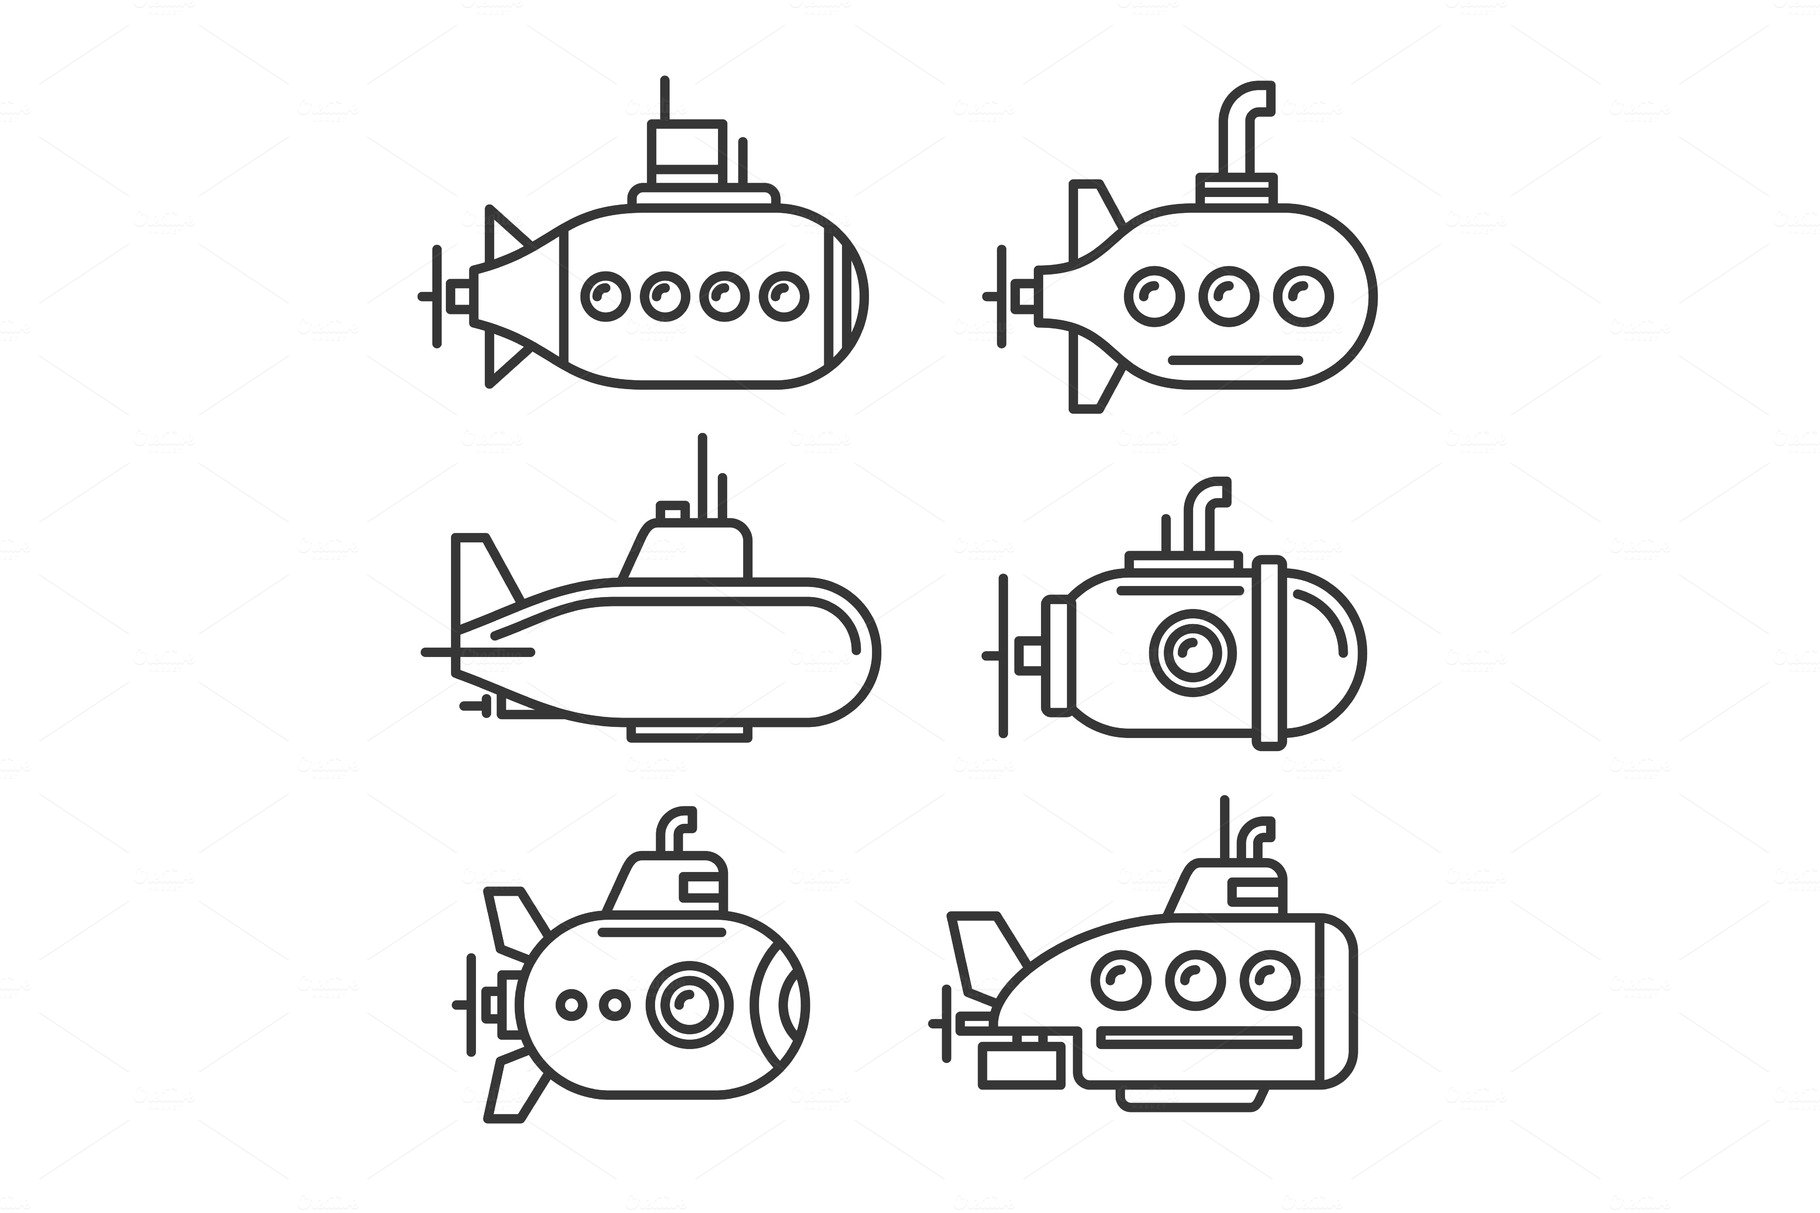 Submarine Icons Set on White cover image.